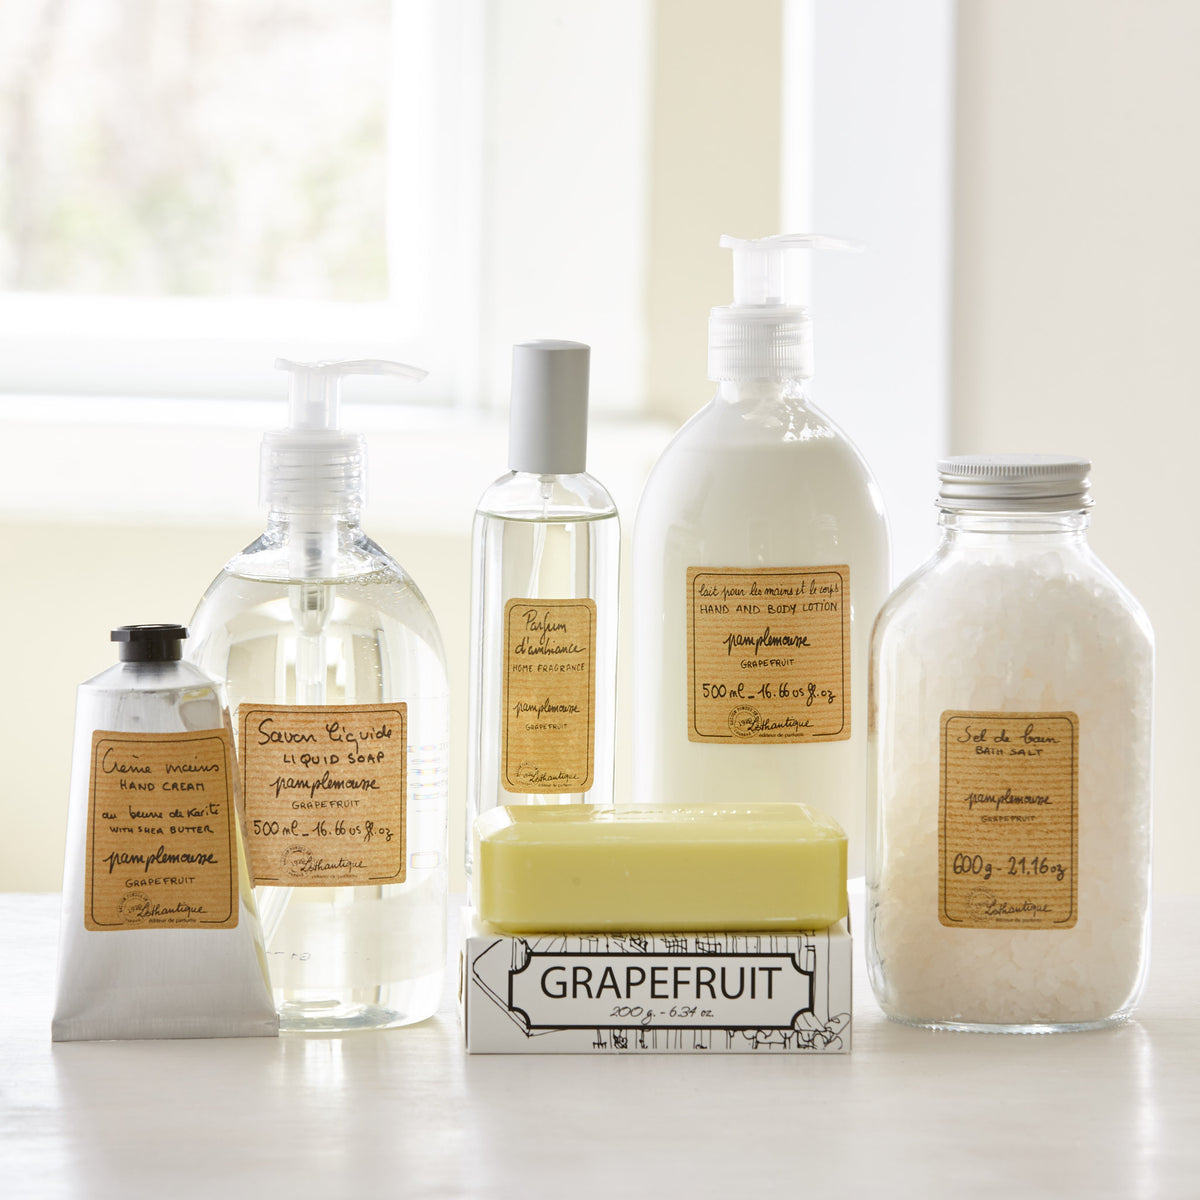 GRAPEFRUIT BATH SOAP